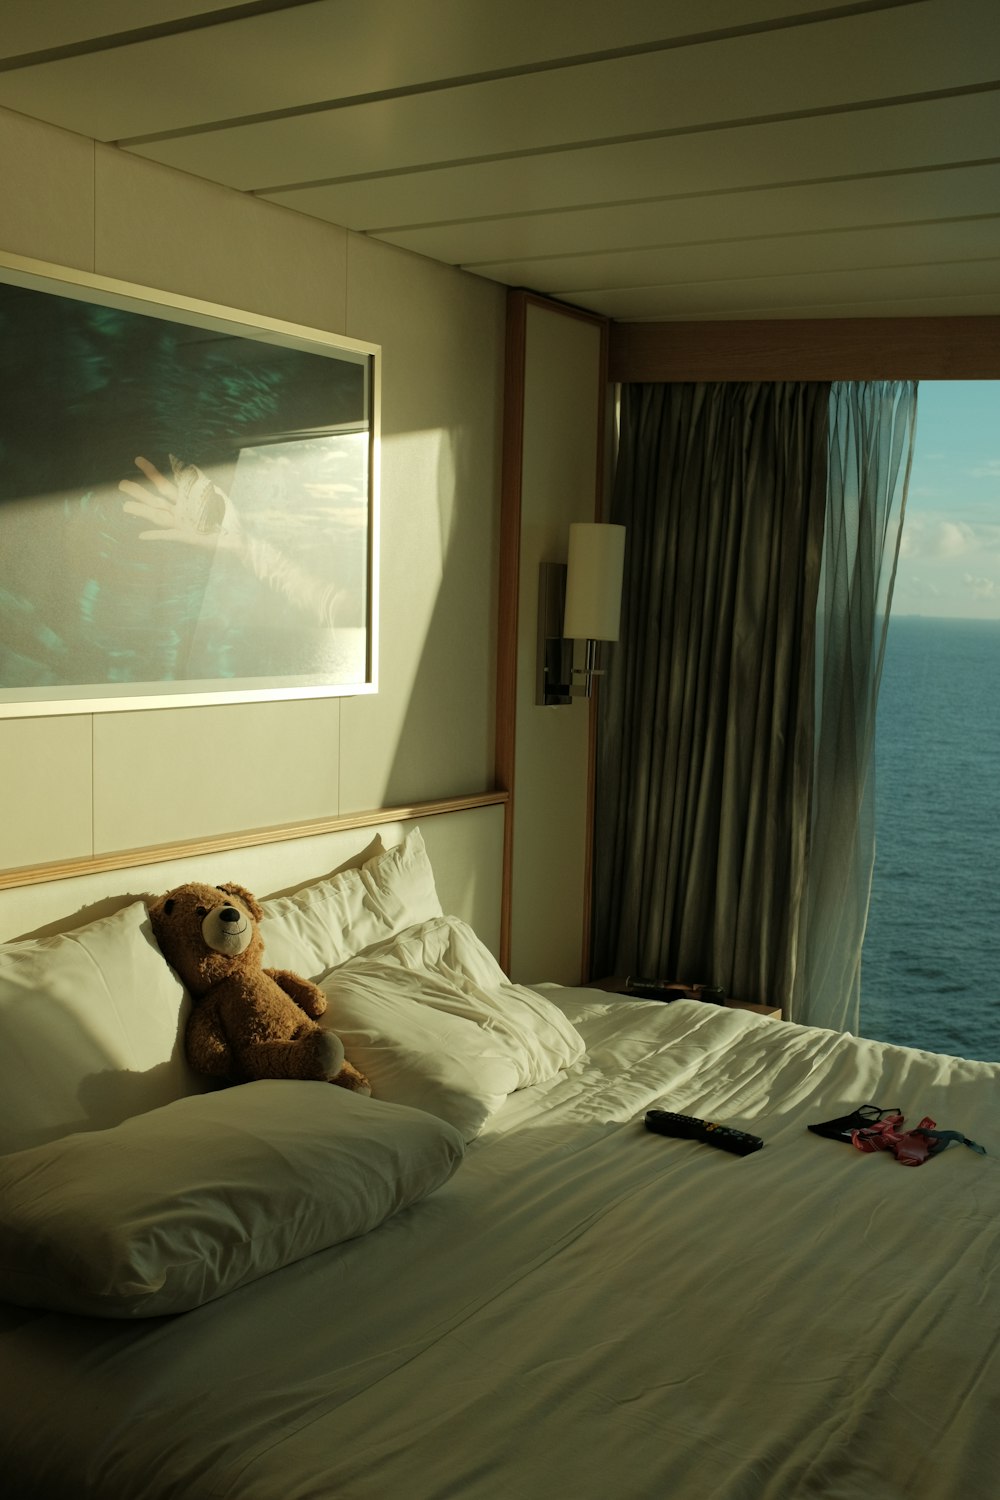 Ein Teddybär liegt auf einem Bett